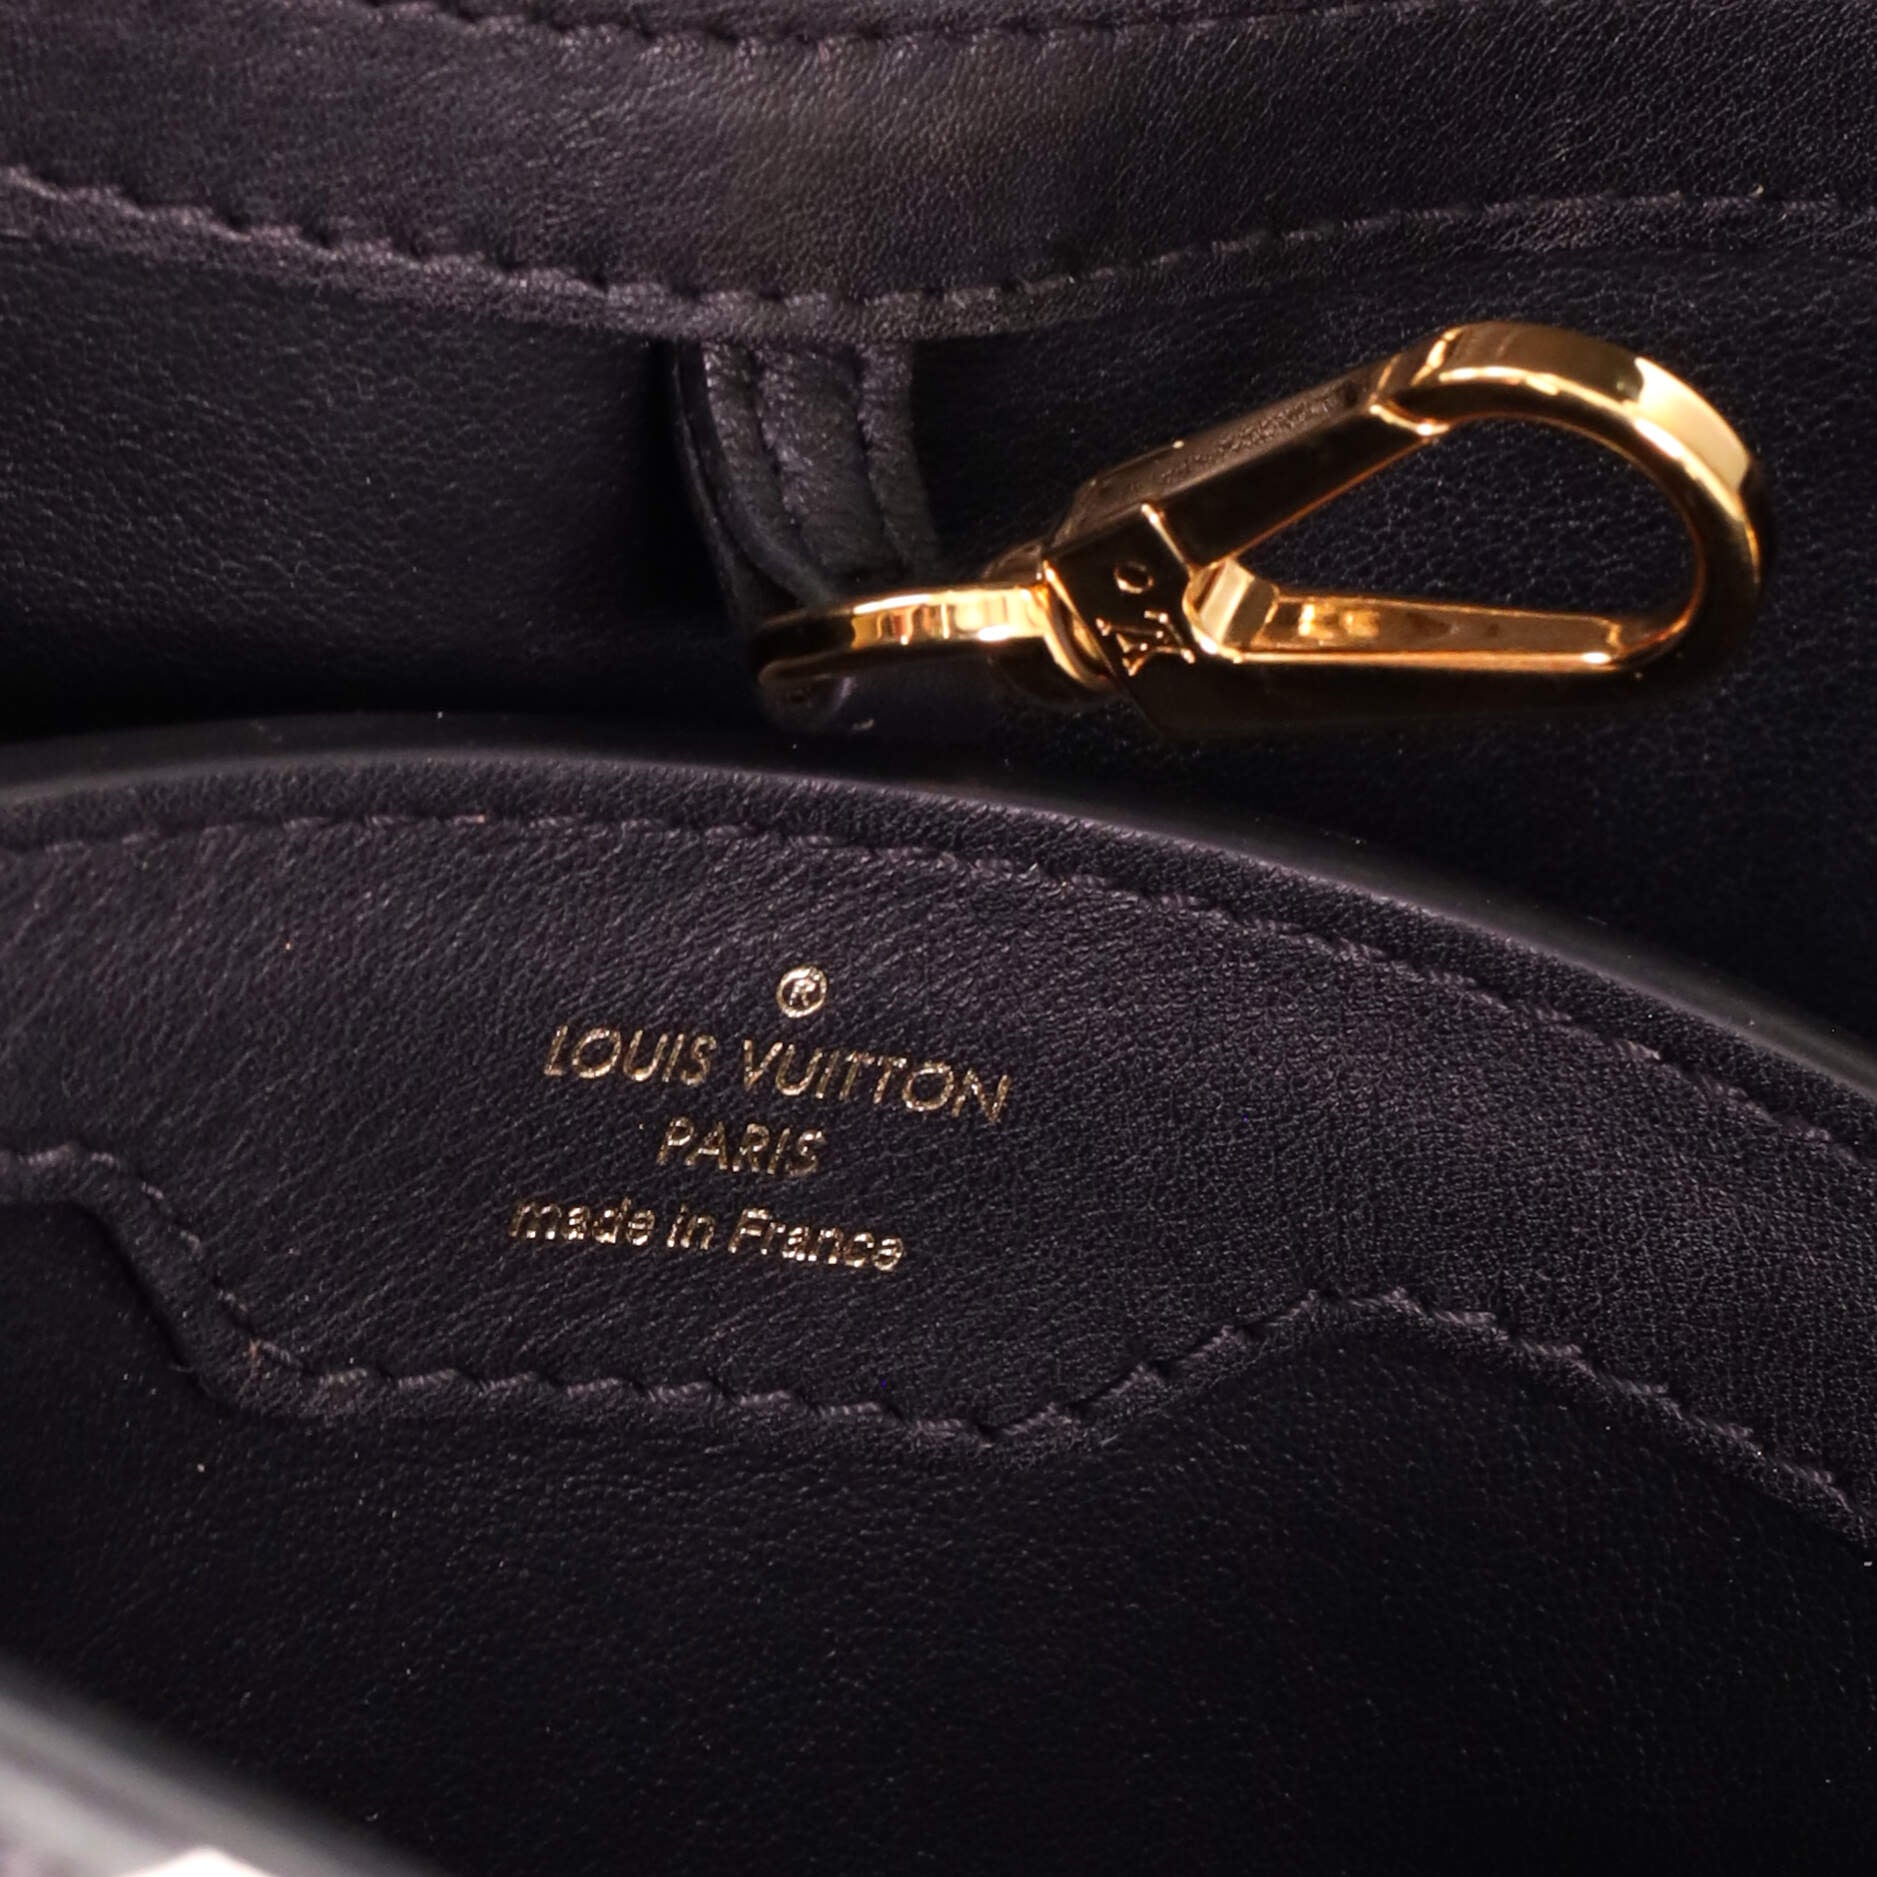 Louis Vuitton Capucines MM Bag Since 1854